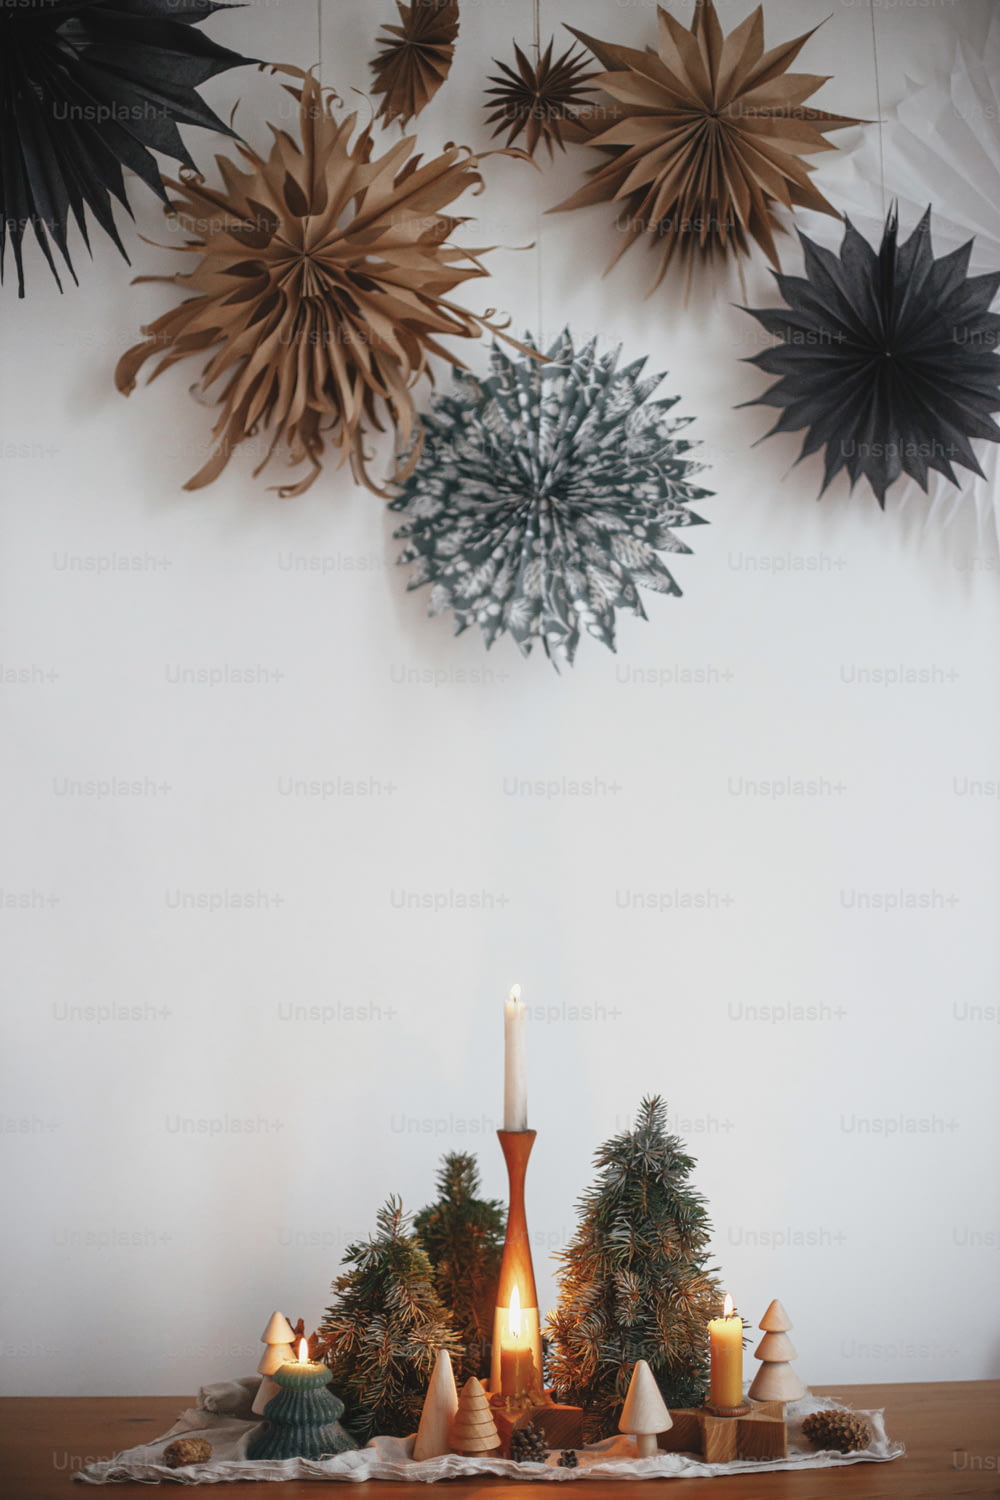 Eleganti candele di natale e decorazioni per alberi su tavolo di legno su sfondo di parete bianca con grandi stelle di carta. Decorazioni natalizie fatte a mano. Atmosferico periodo invernale. Buon Natale!